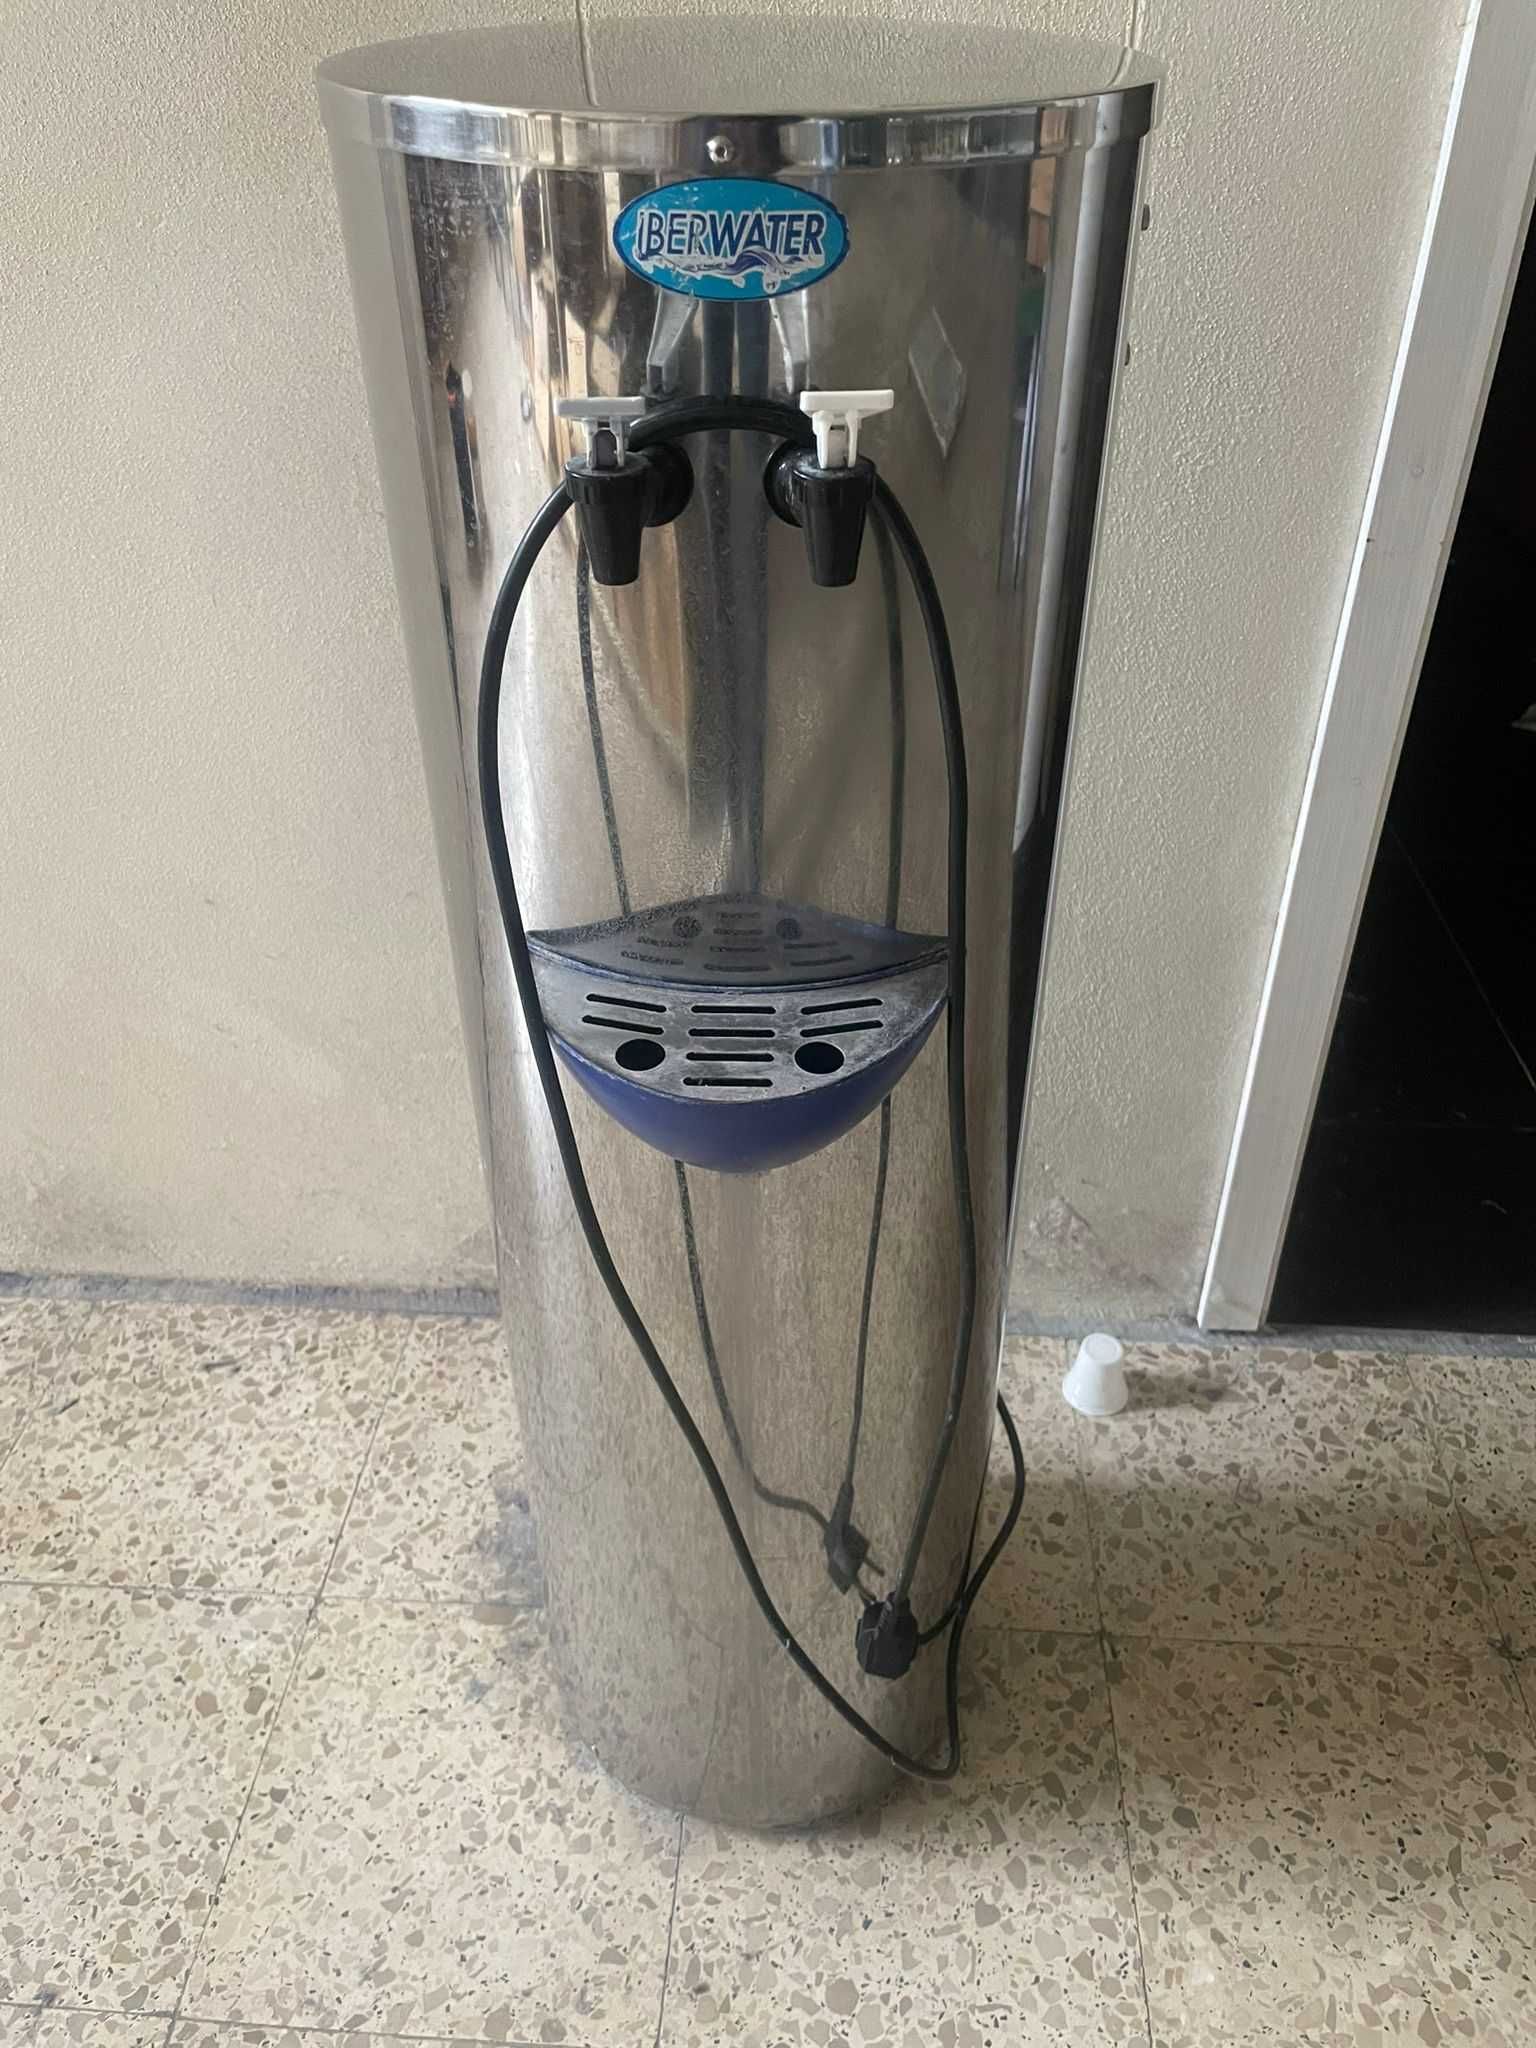 Maquina de agua Iberwater com 2 filtros de oferta.